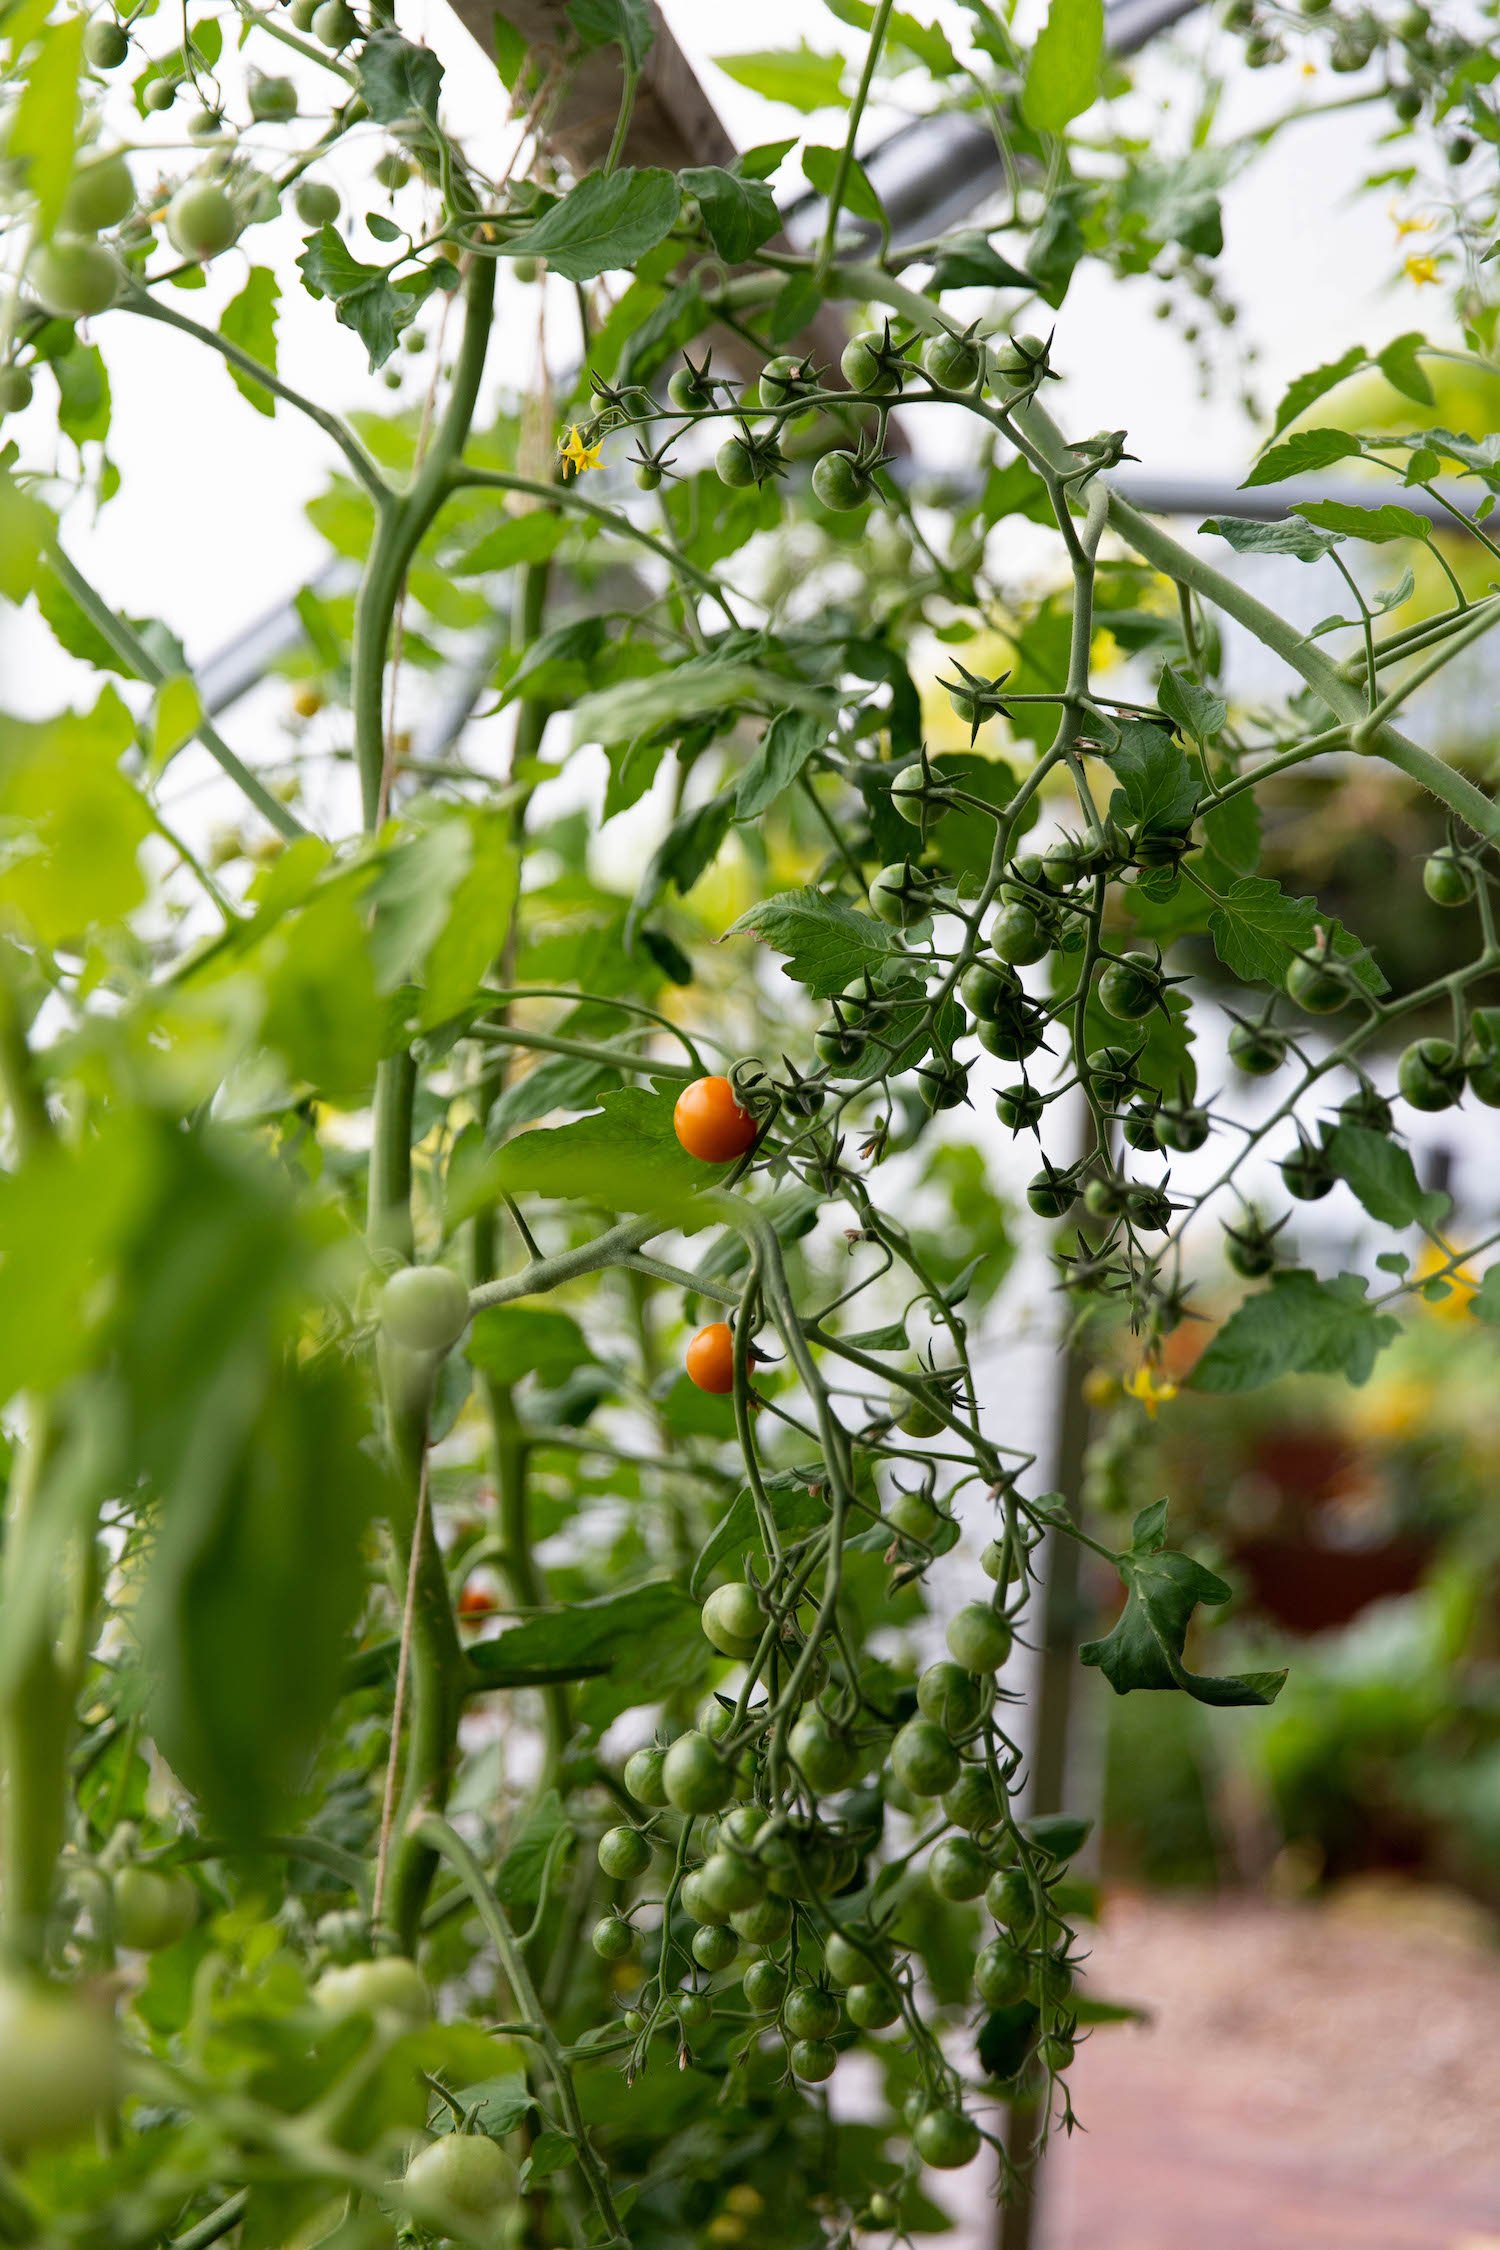 Polytunnel tomatoes RHS community garden Blanaevon Victoria Wade landscape.jpeg